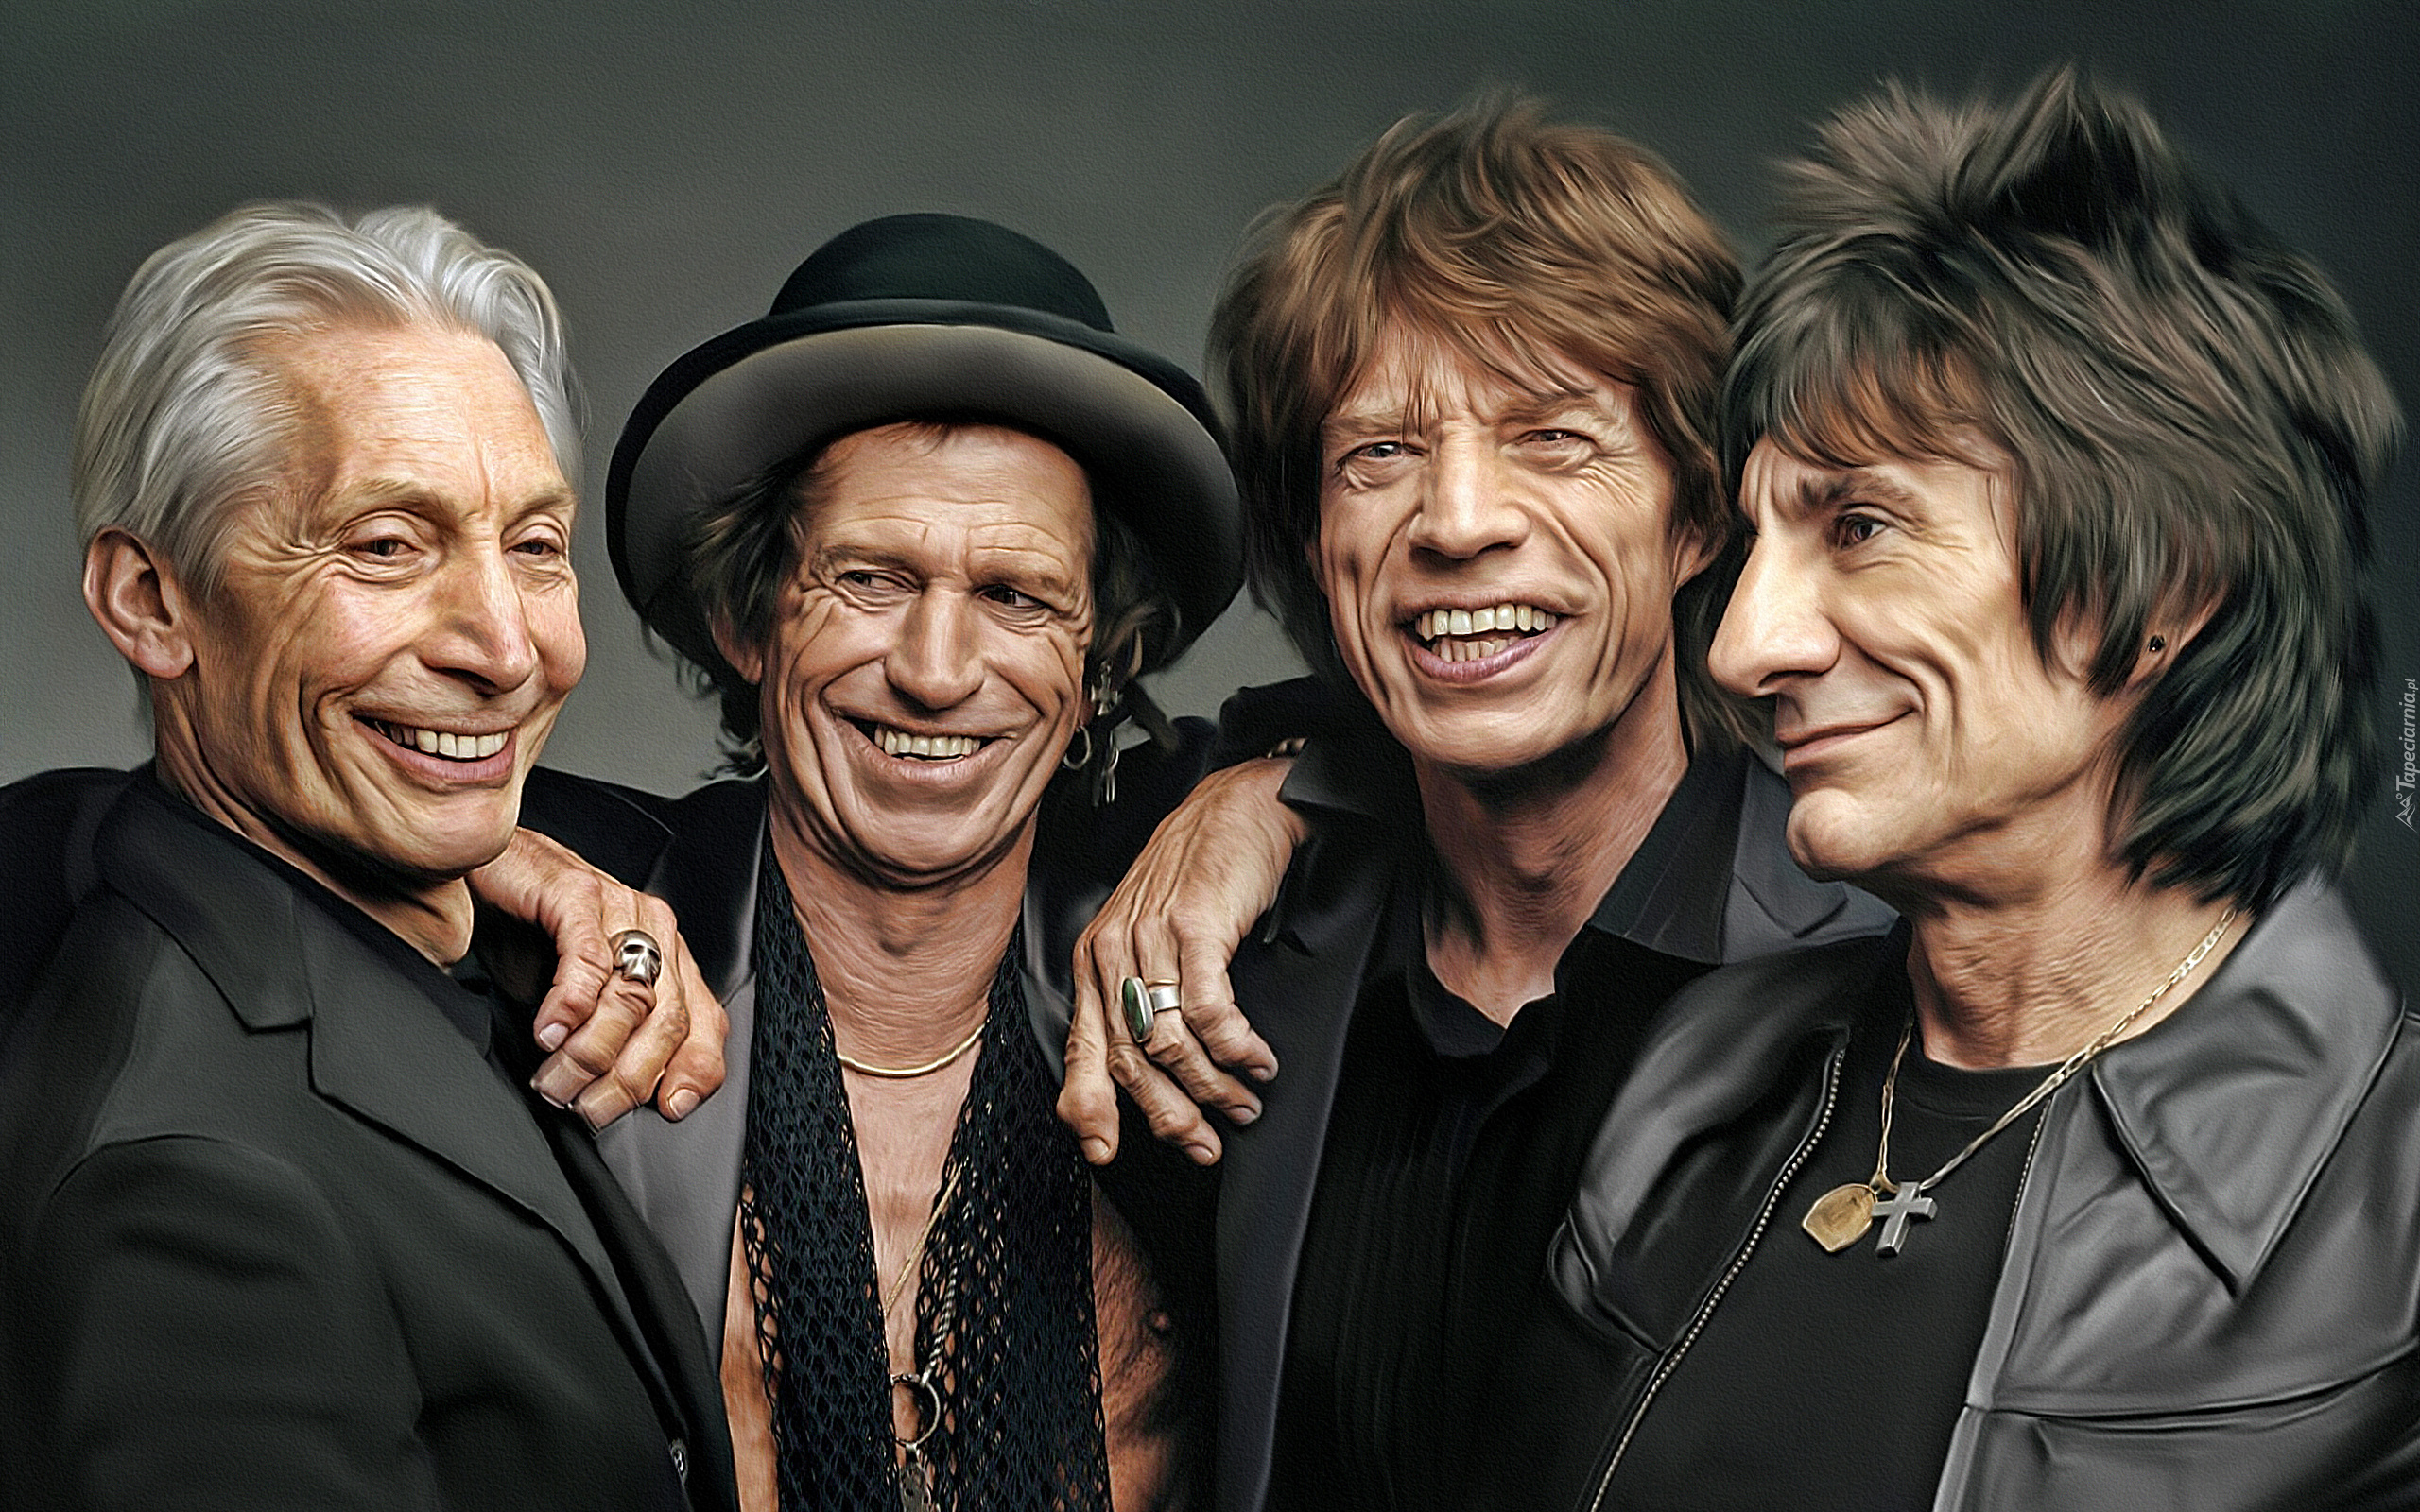 Grafika, Mężczyźni, Zespół rockowy, The Rolling Stones, Charlie Watts, Keith Richards, Mick Jagger, Ron Wood